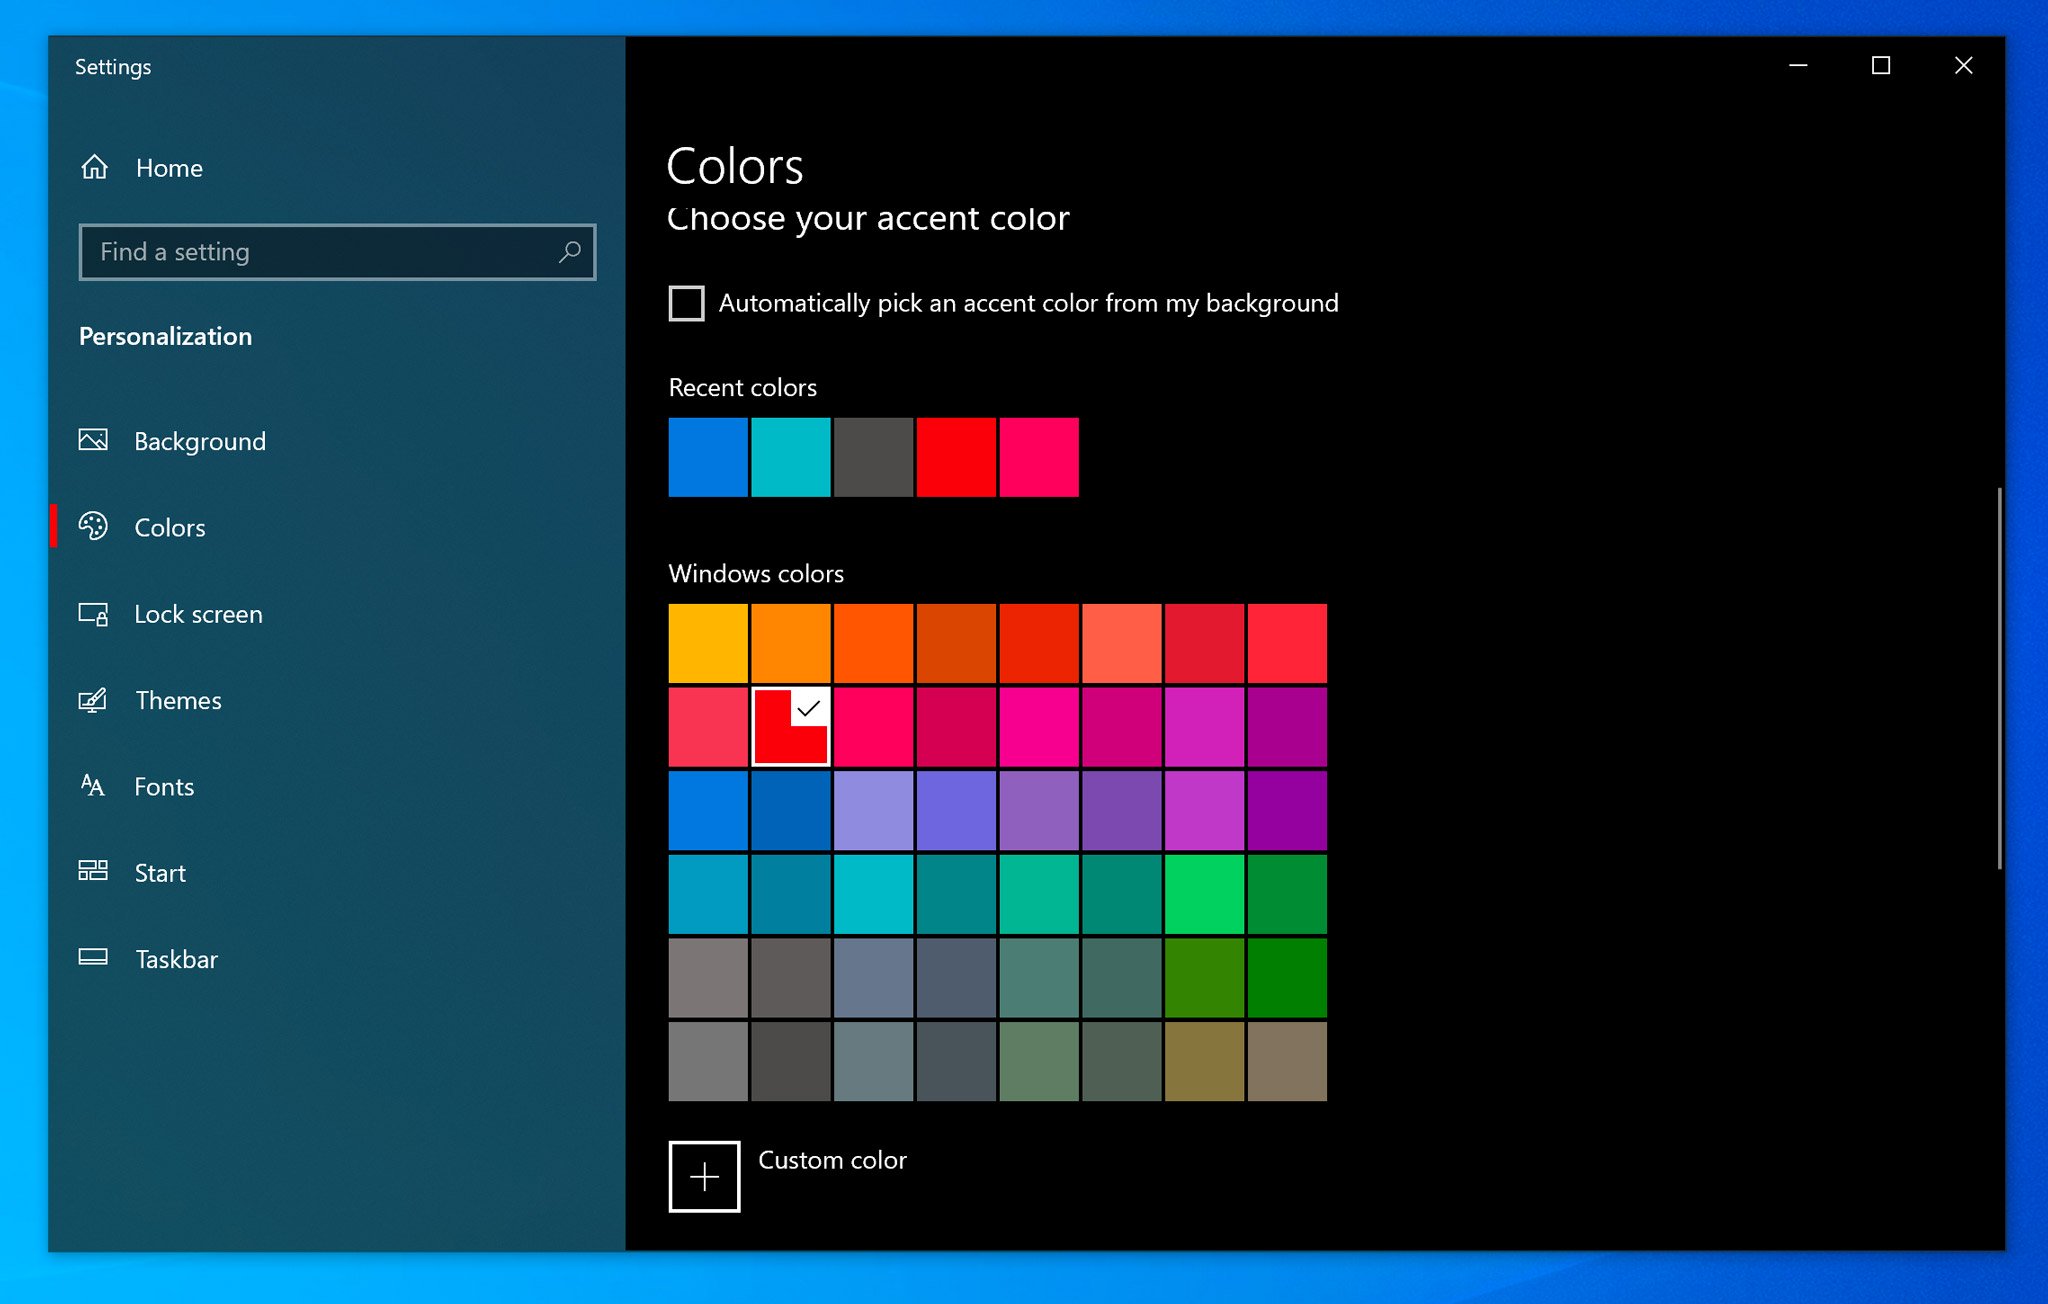 Hình nền đẹp cho Windows 10 - Nâng cấp không gian làm việc của bạn